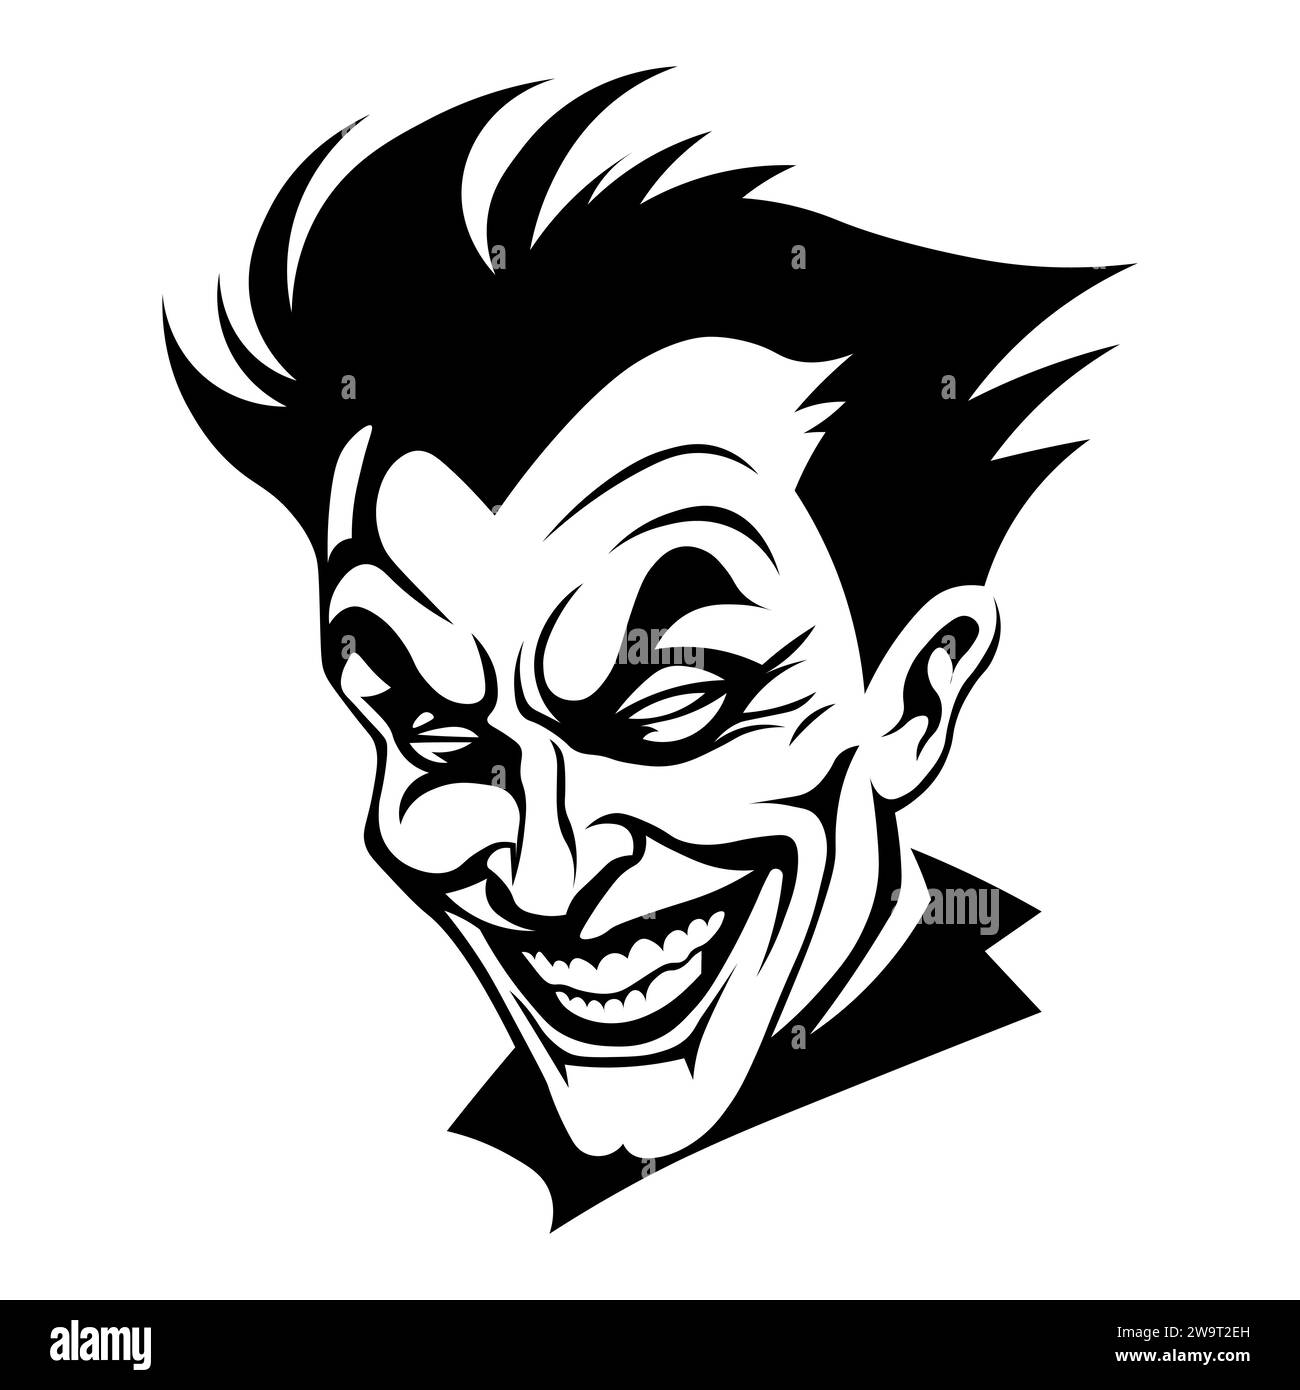 Joker black vector icon on white background Stock Vector